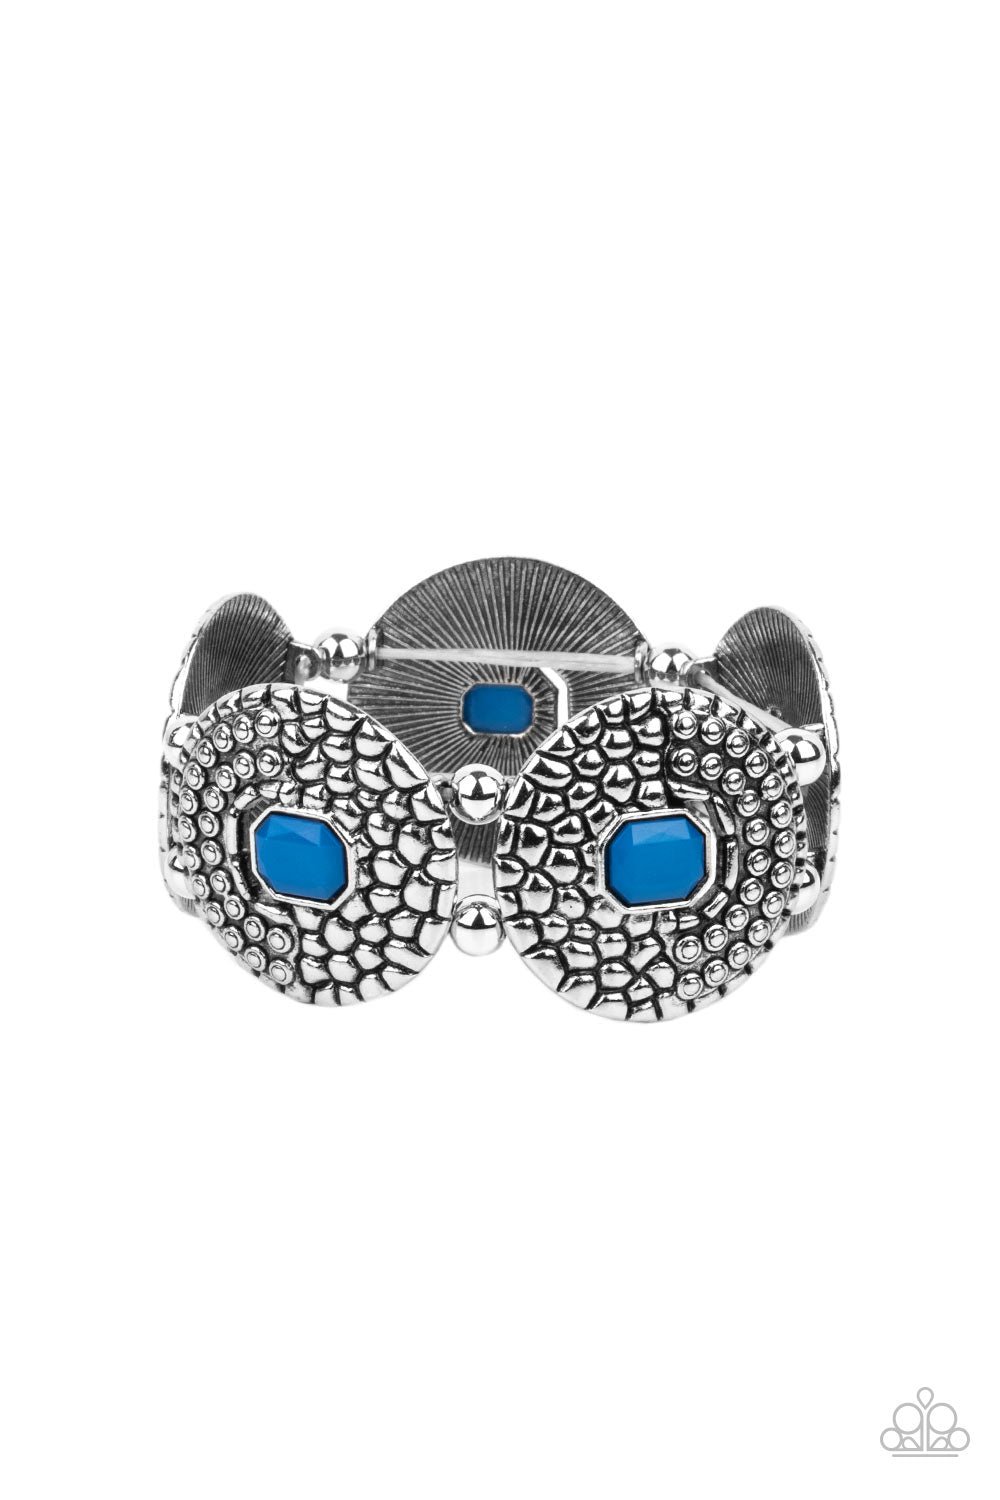 Prismatic Prowl - blue - Paparazzi bracelet